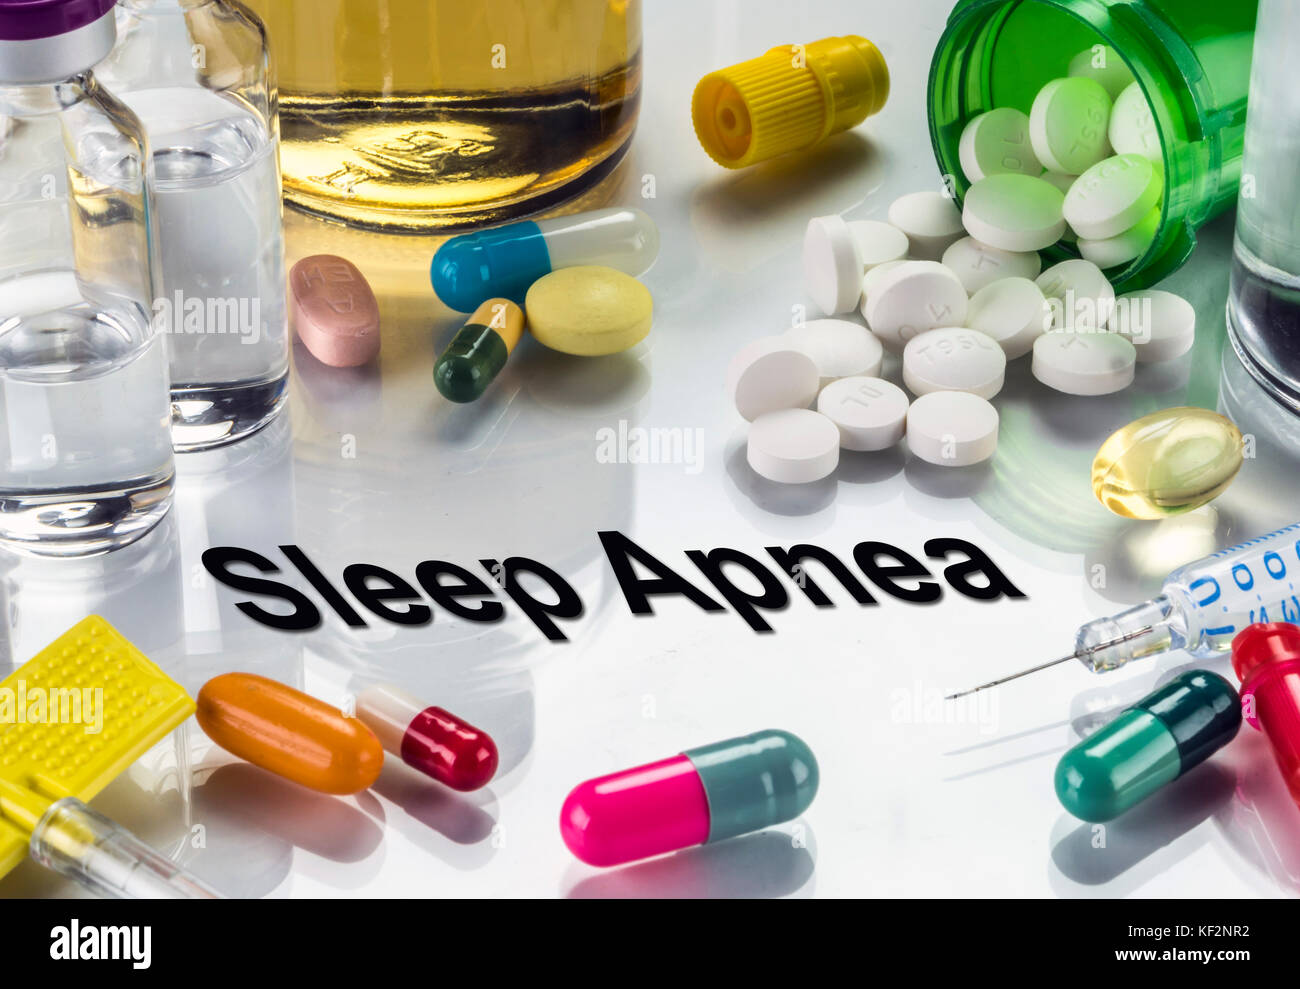 Sleep Apnea, medicines as concept of ordinary treatment, conceptual image Stock Photo